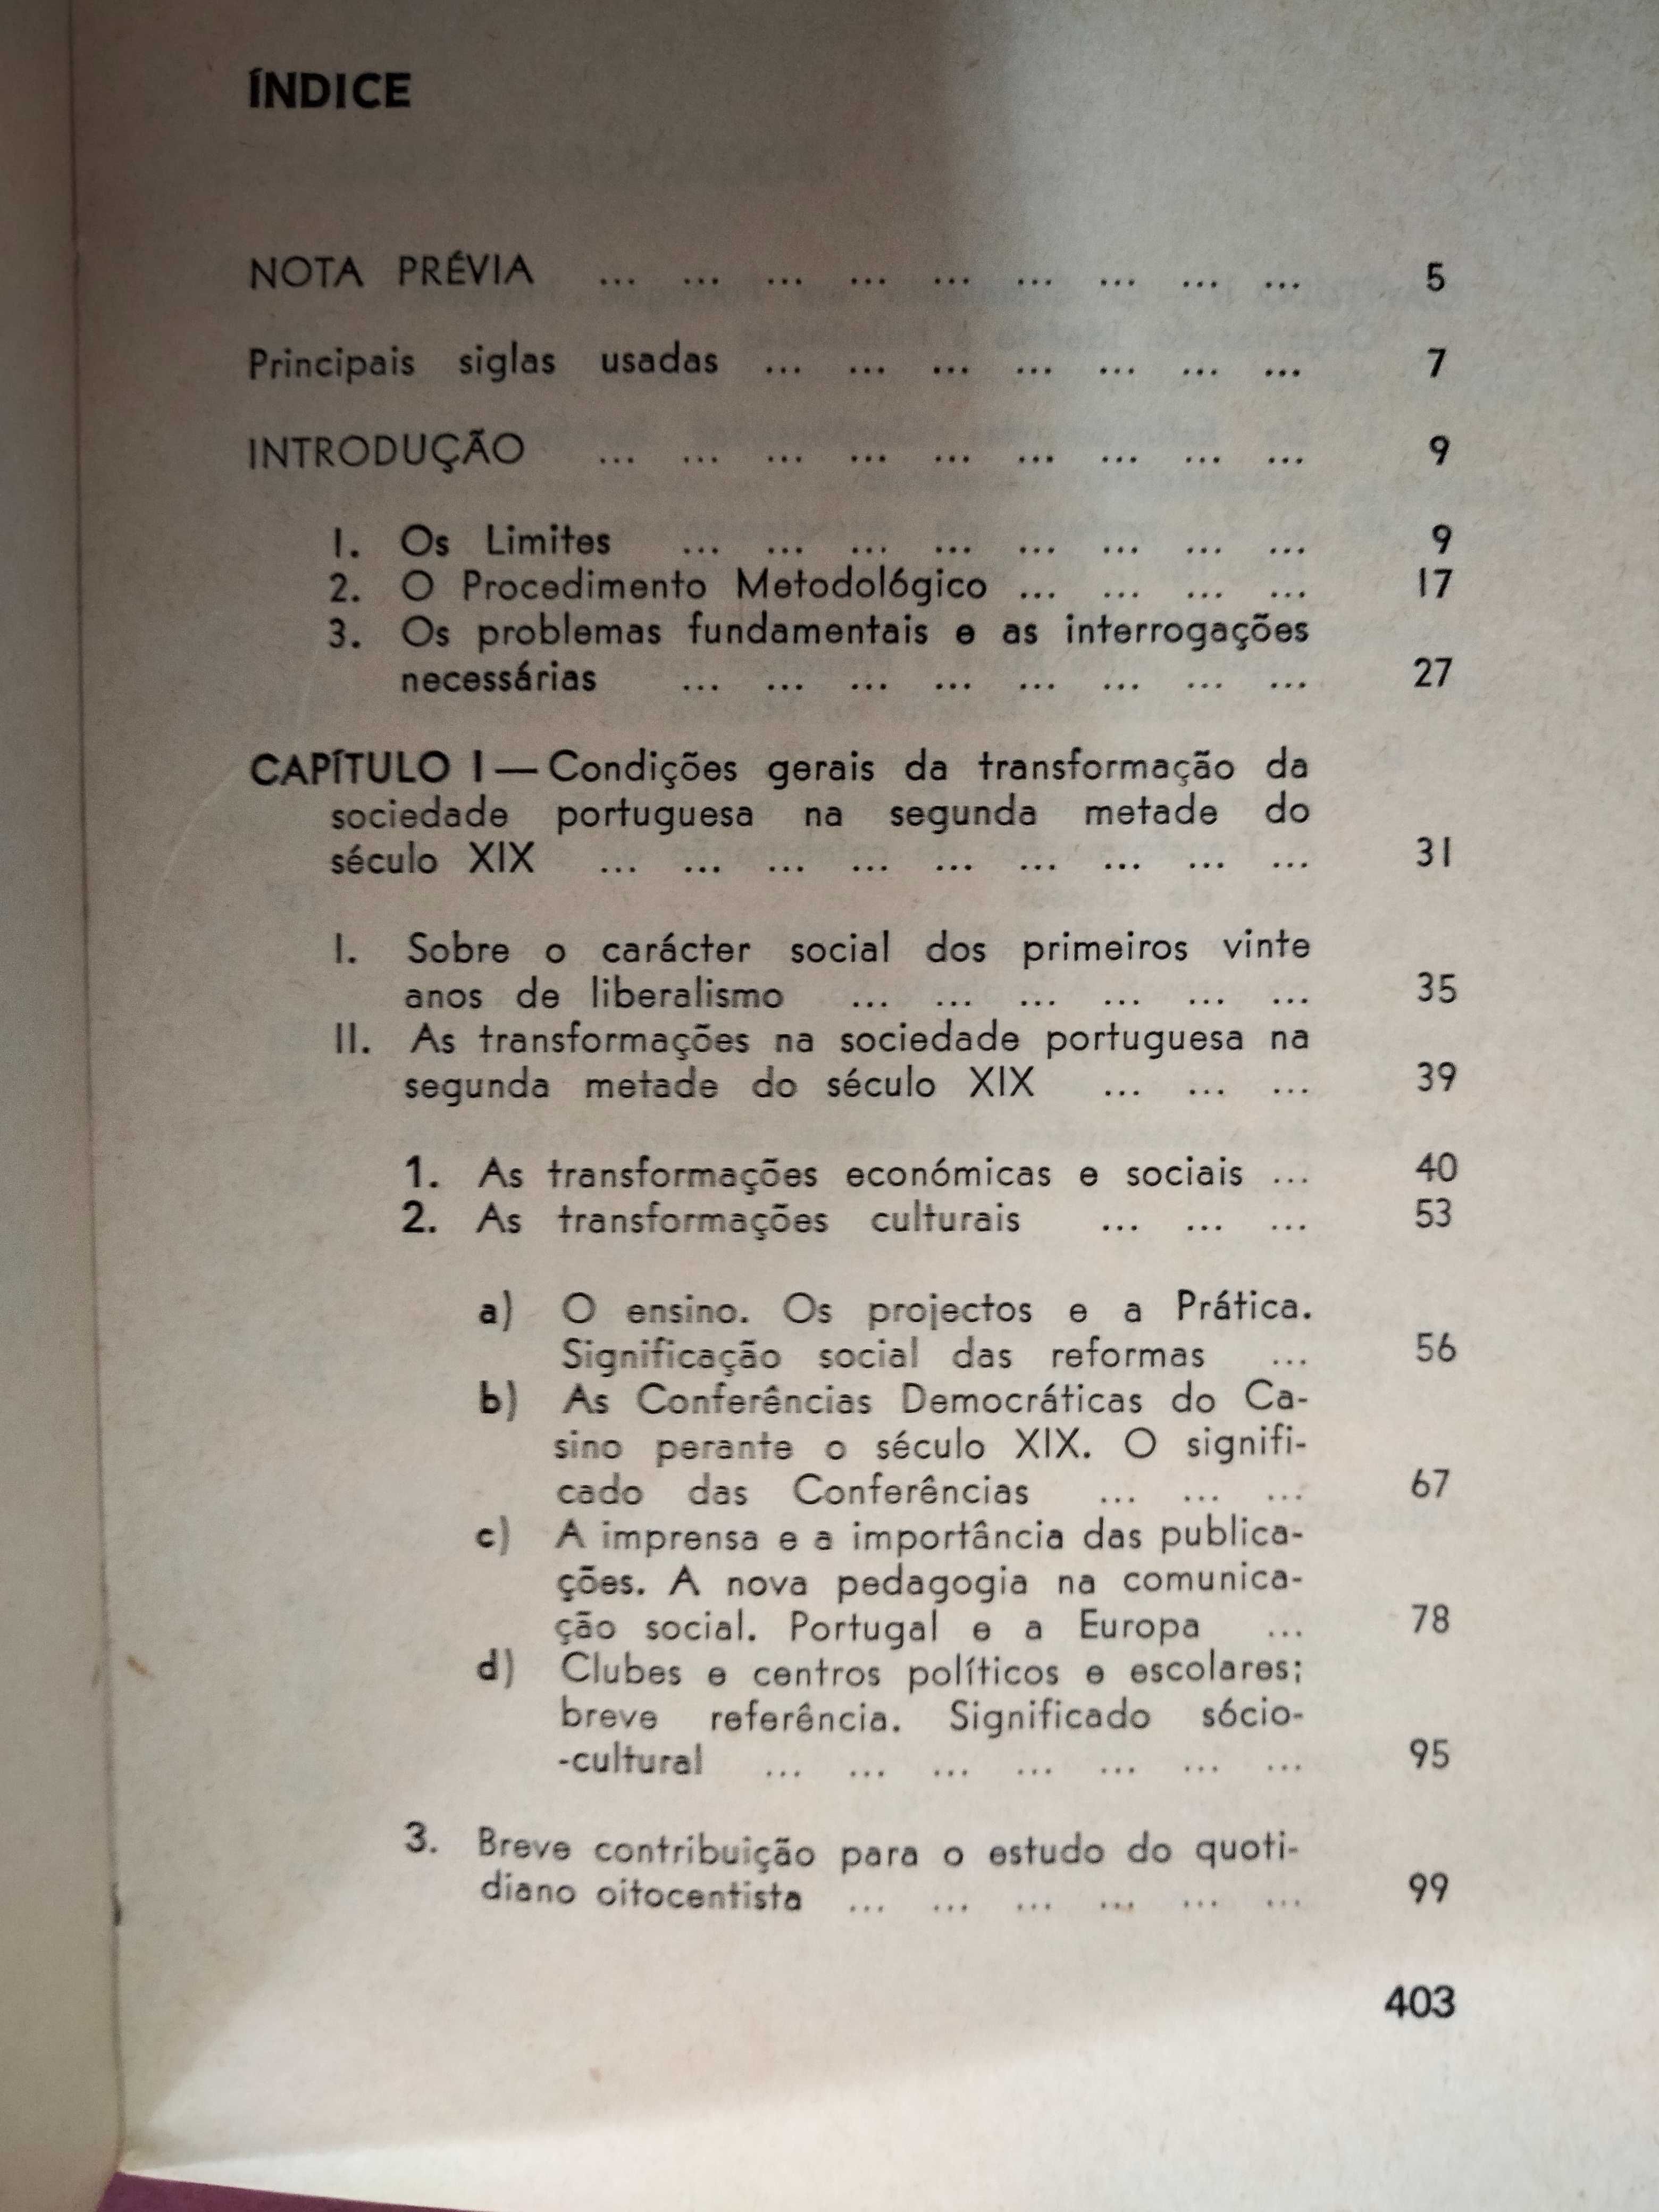 O Socialismo Em Portugal 1850/1900 - César Oliveira